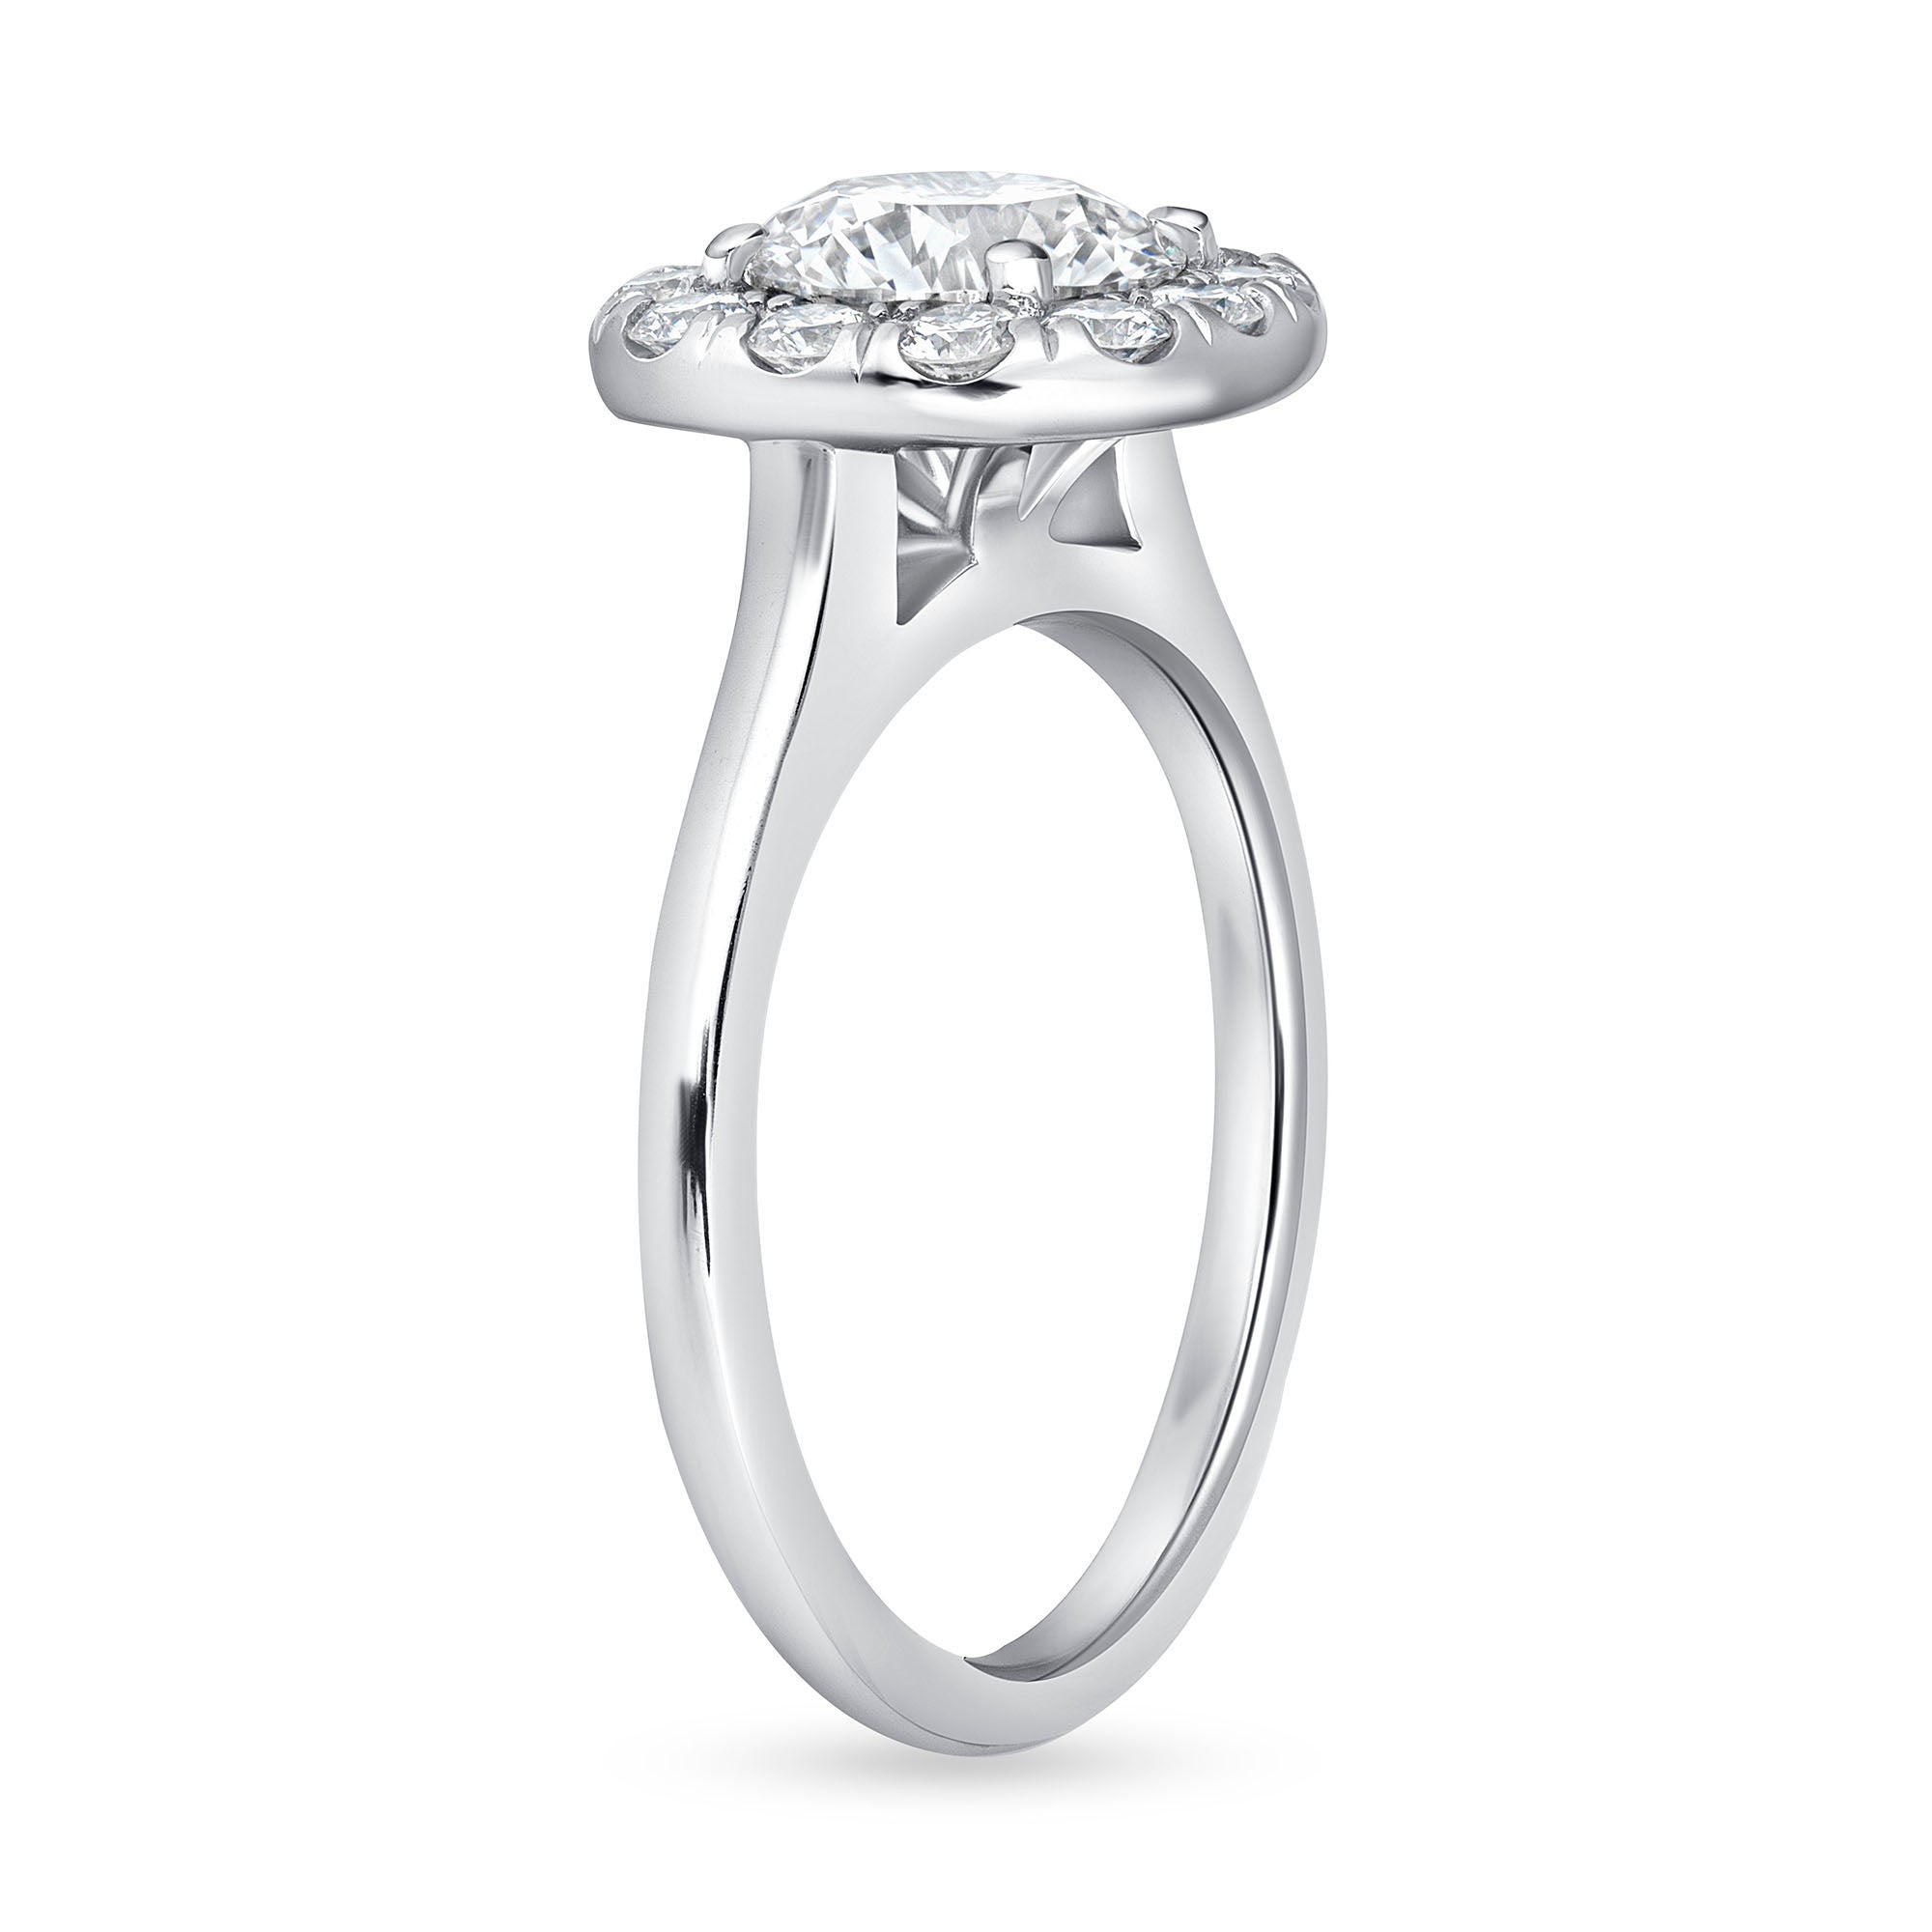 Round Cut Diamond Ring with Halo in Platinum Ruthenium